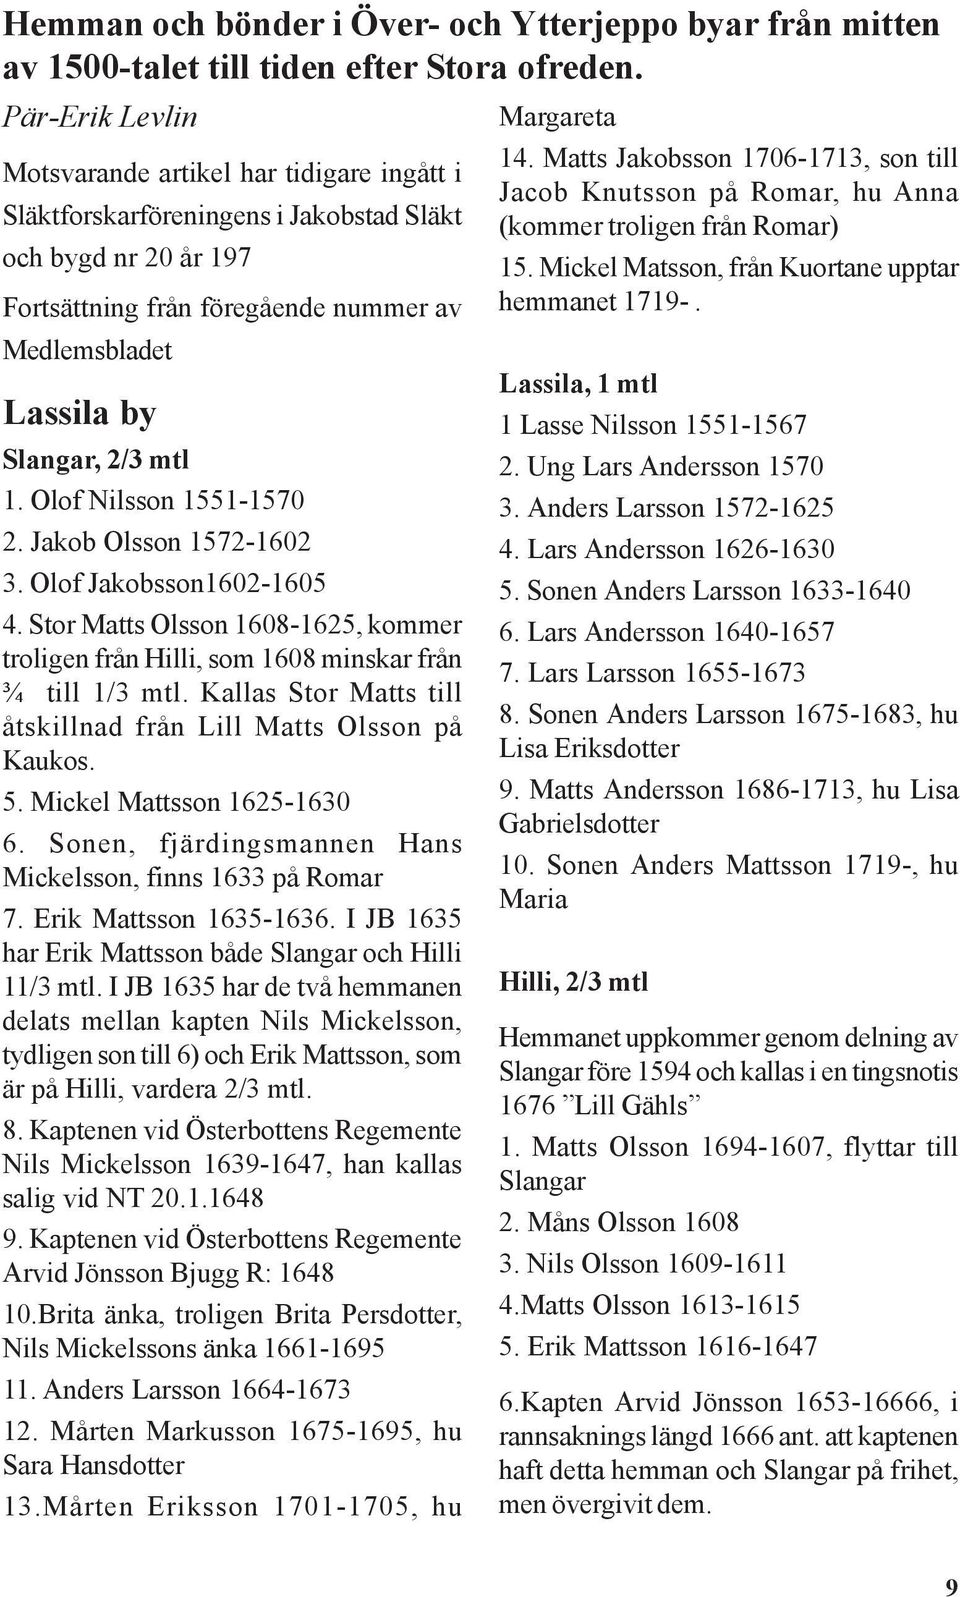 mtl 1. Olof Nilsson 1551-1570 2. Jakob Olsson 1572-1602 3. Olof Jakobsson1602-1605 4. Stor Matts Olsson 1608-1625, kommer troligen från Hilli, som 1608 minskar från ¾ till 1/3 mtl.